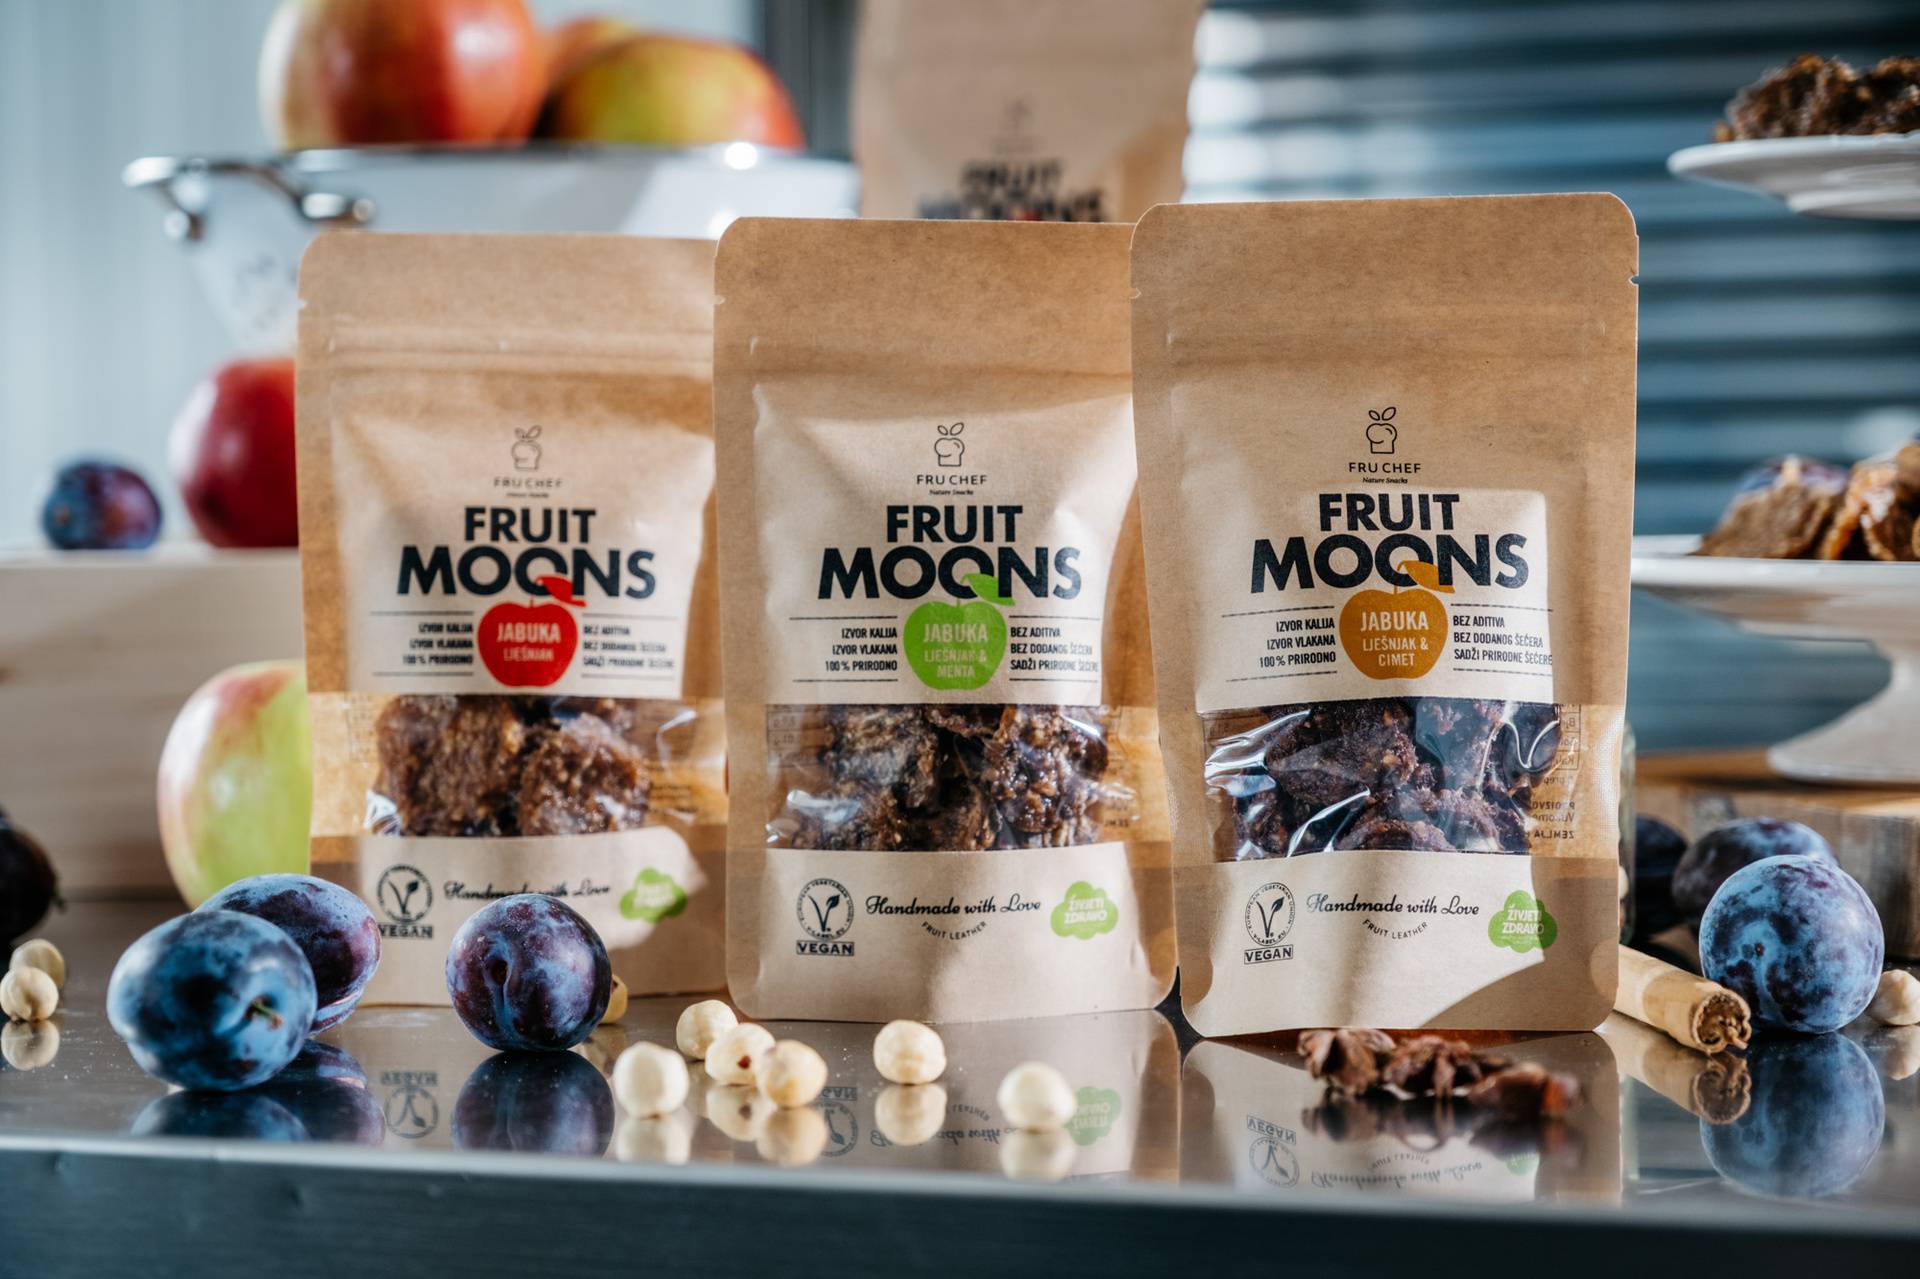 Upornost i trud recept su za uspjeh, a znate li od čega nastaju slastice Fruit Moons?